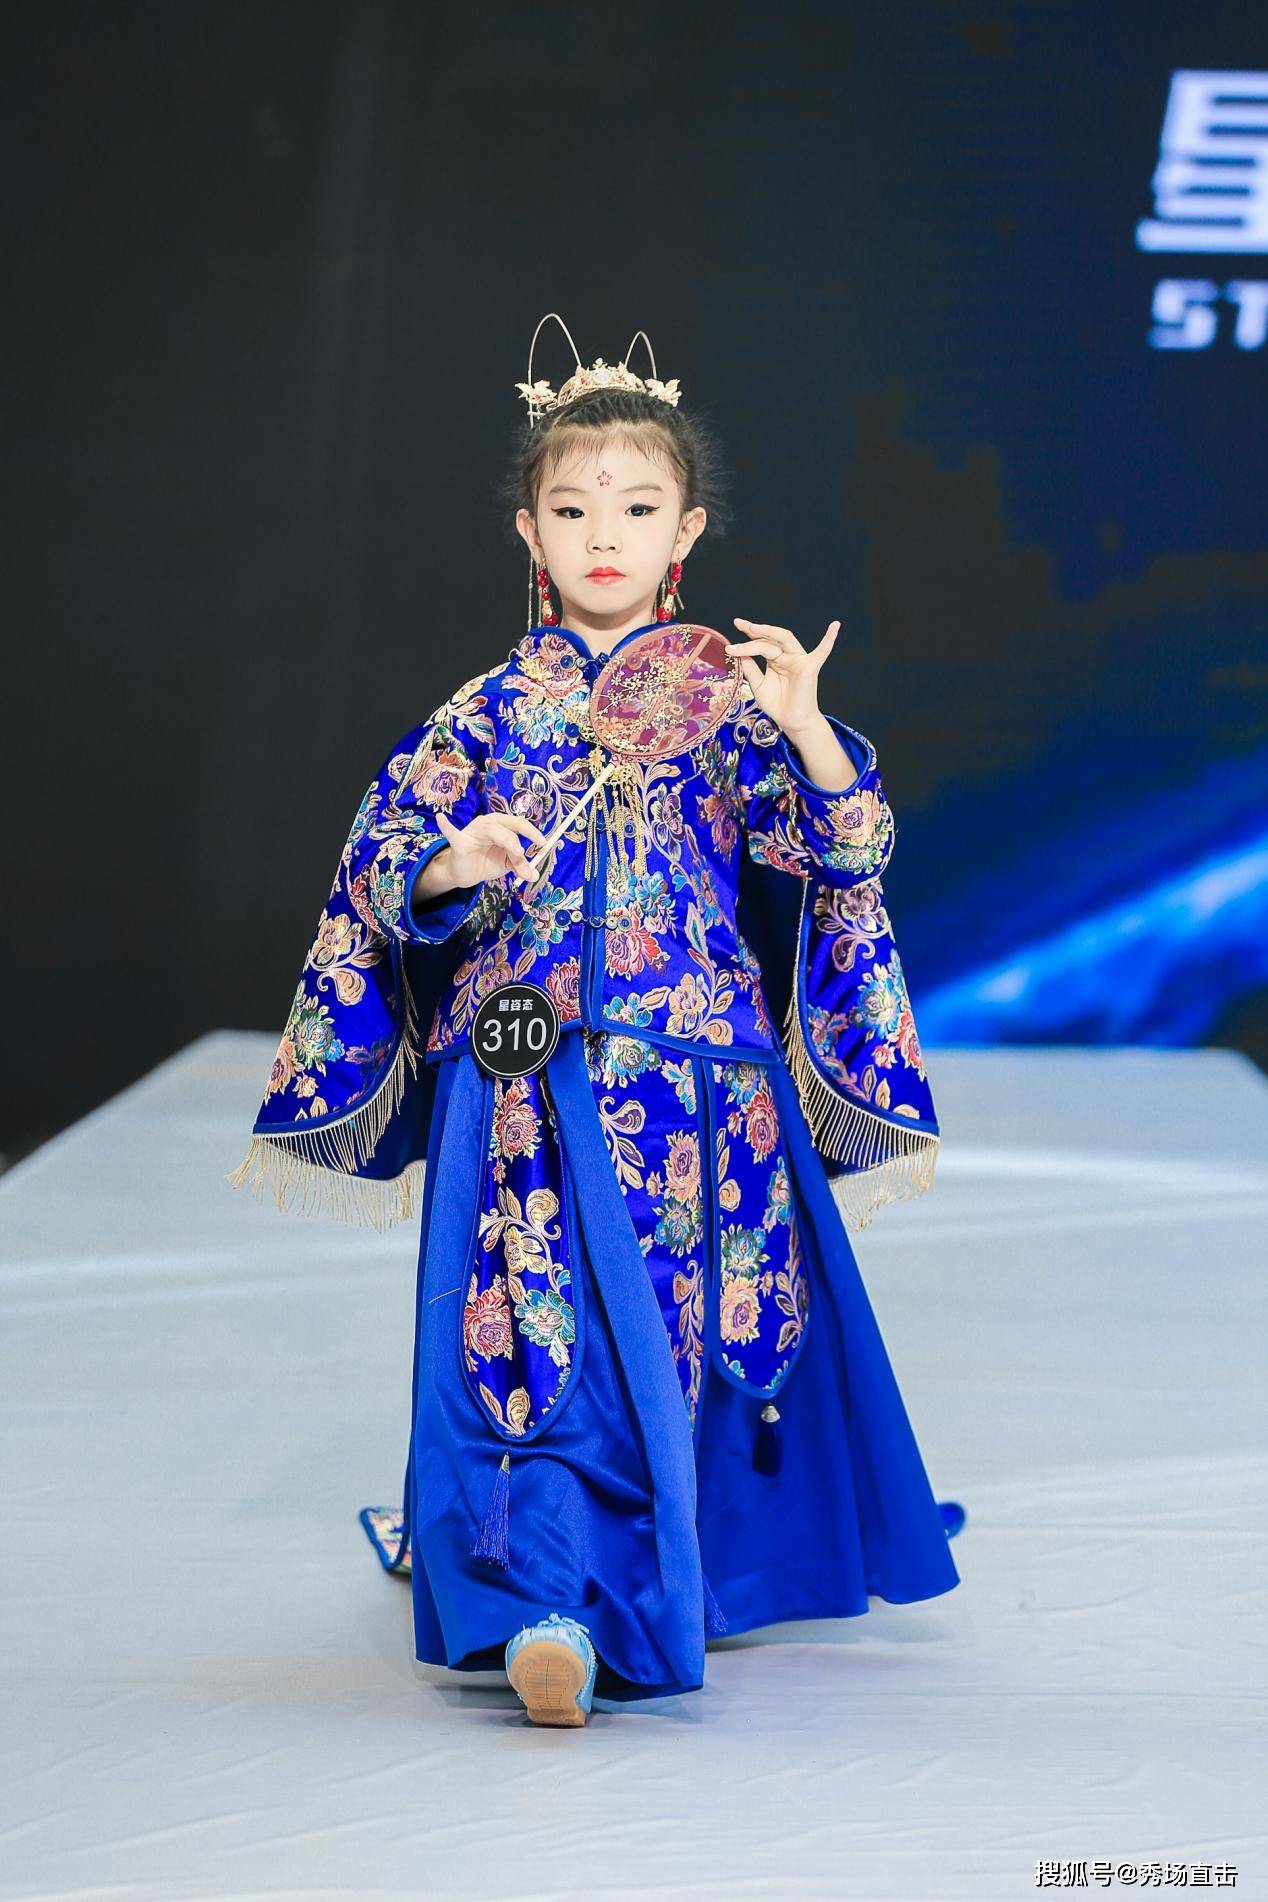 第六届wkm国际少儿模特大赛年度总冠军网络人气亚军——王梓萱